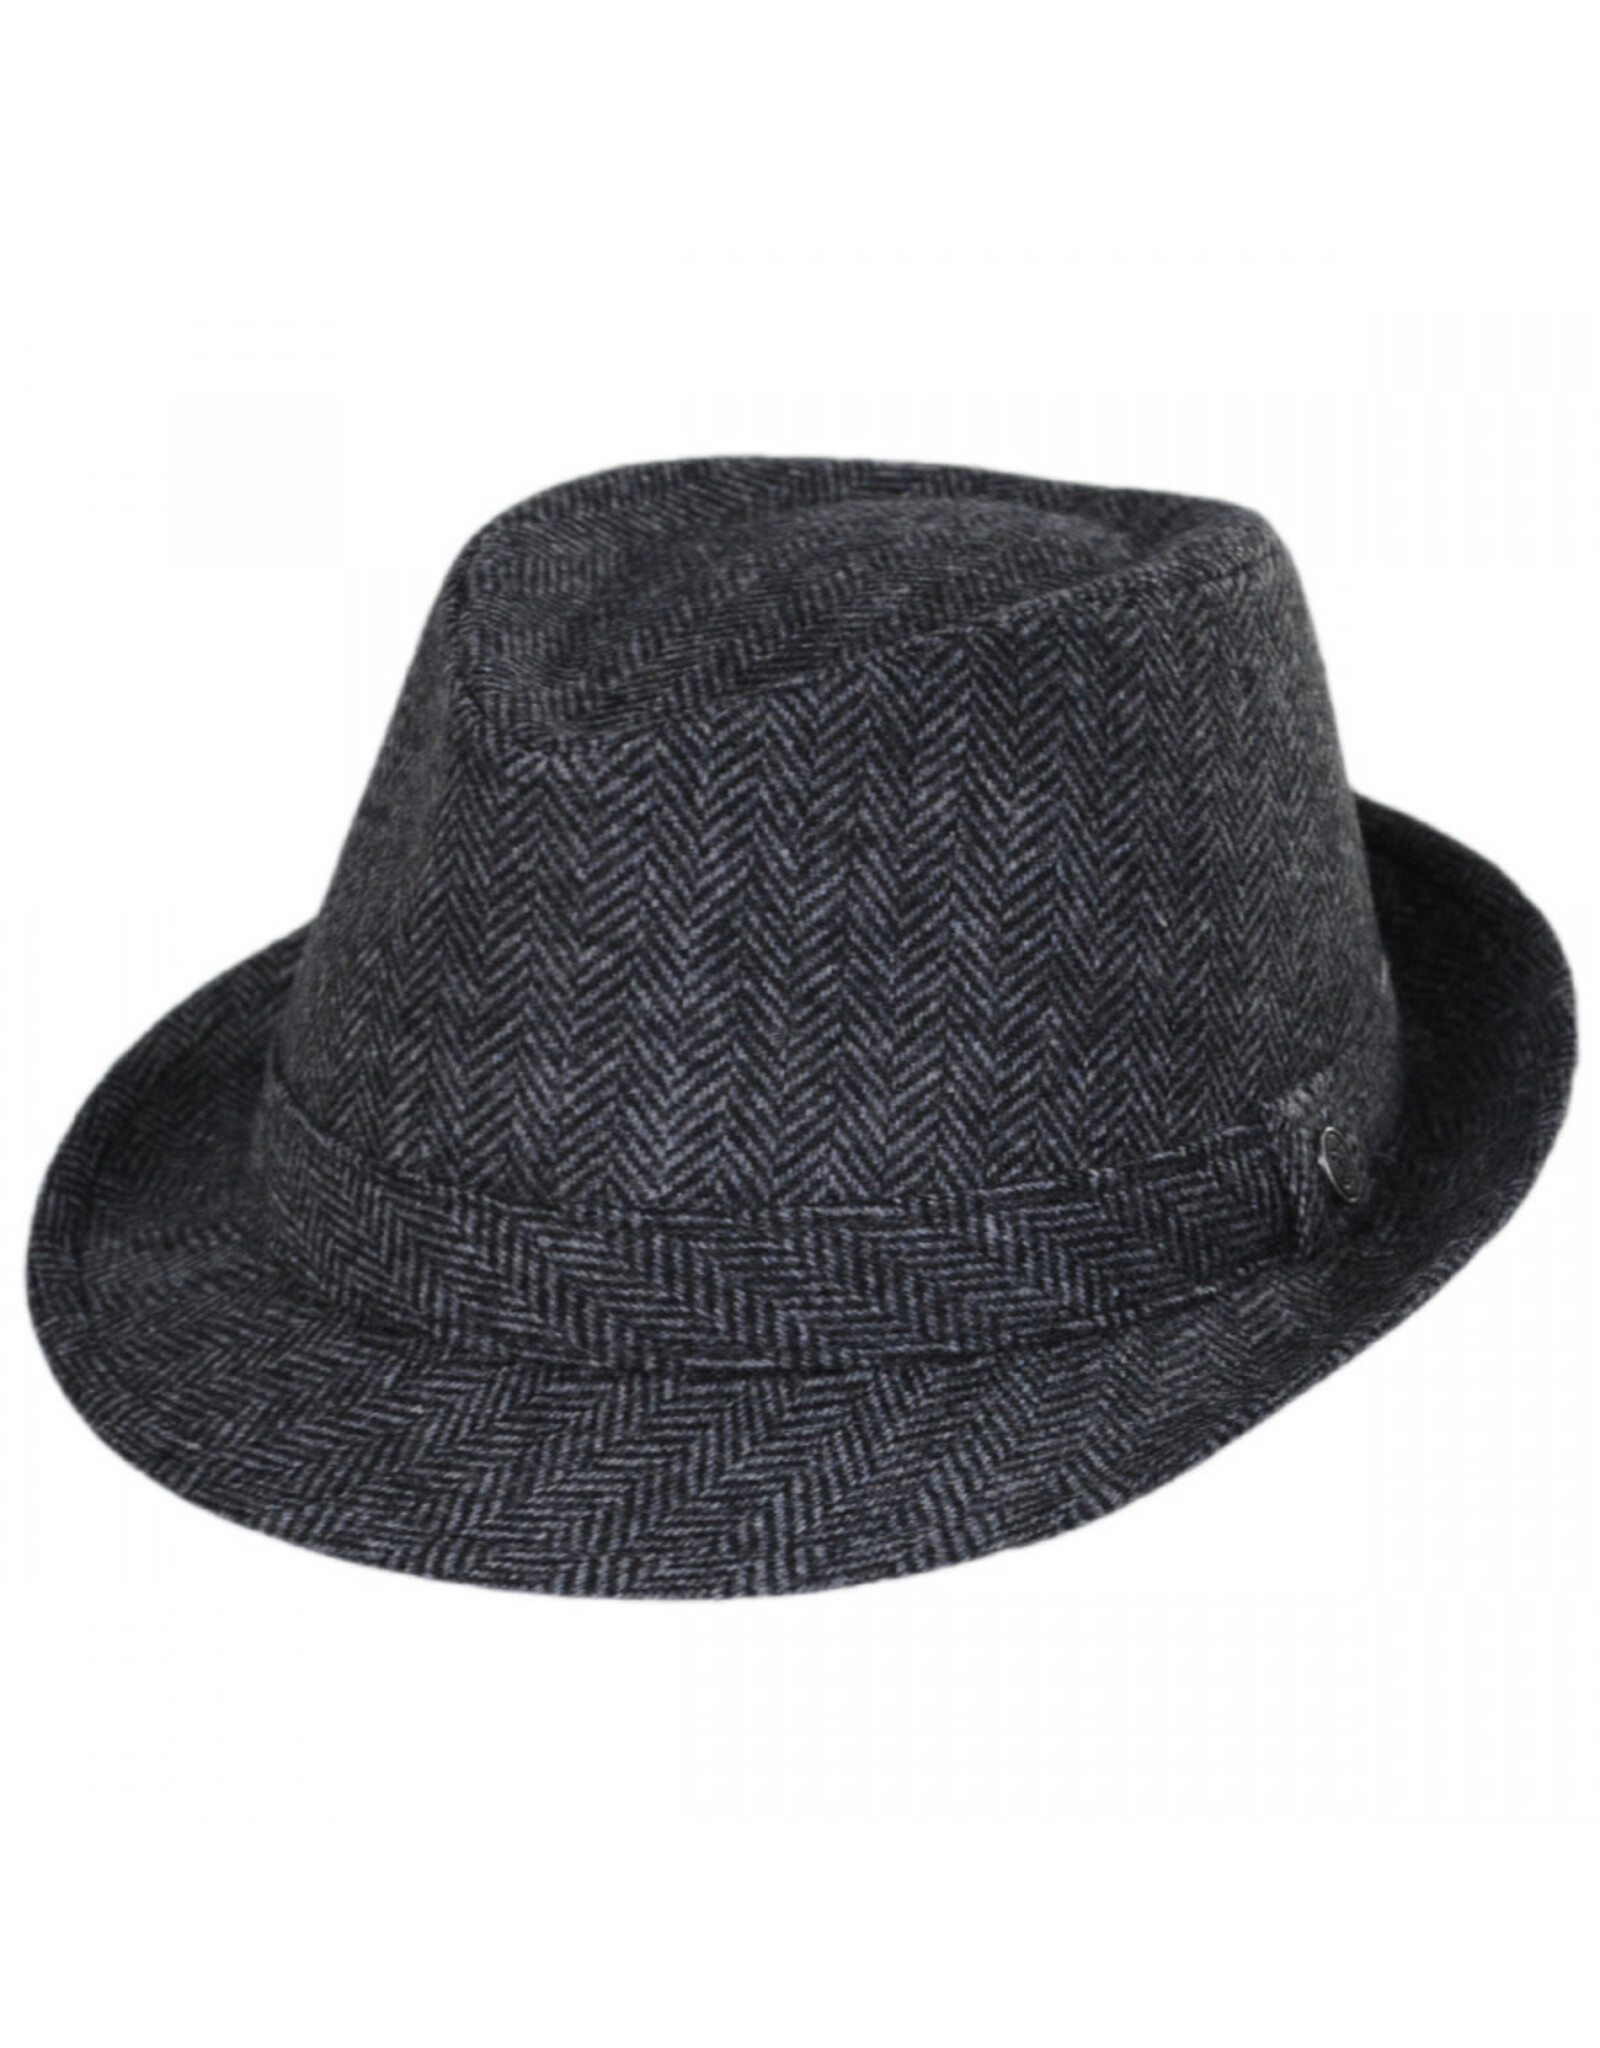 Jaxon Hats, Inc. XXL Herringbone Wool Trilby Fedora Hat